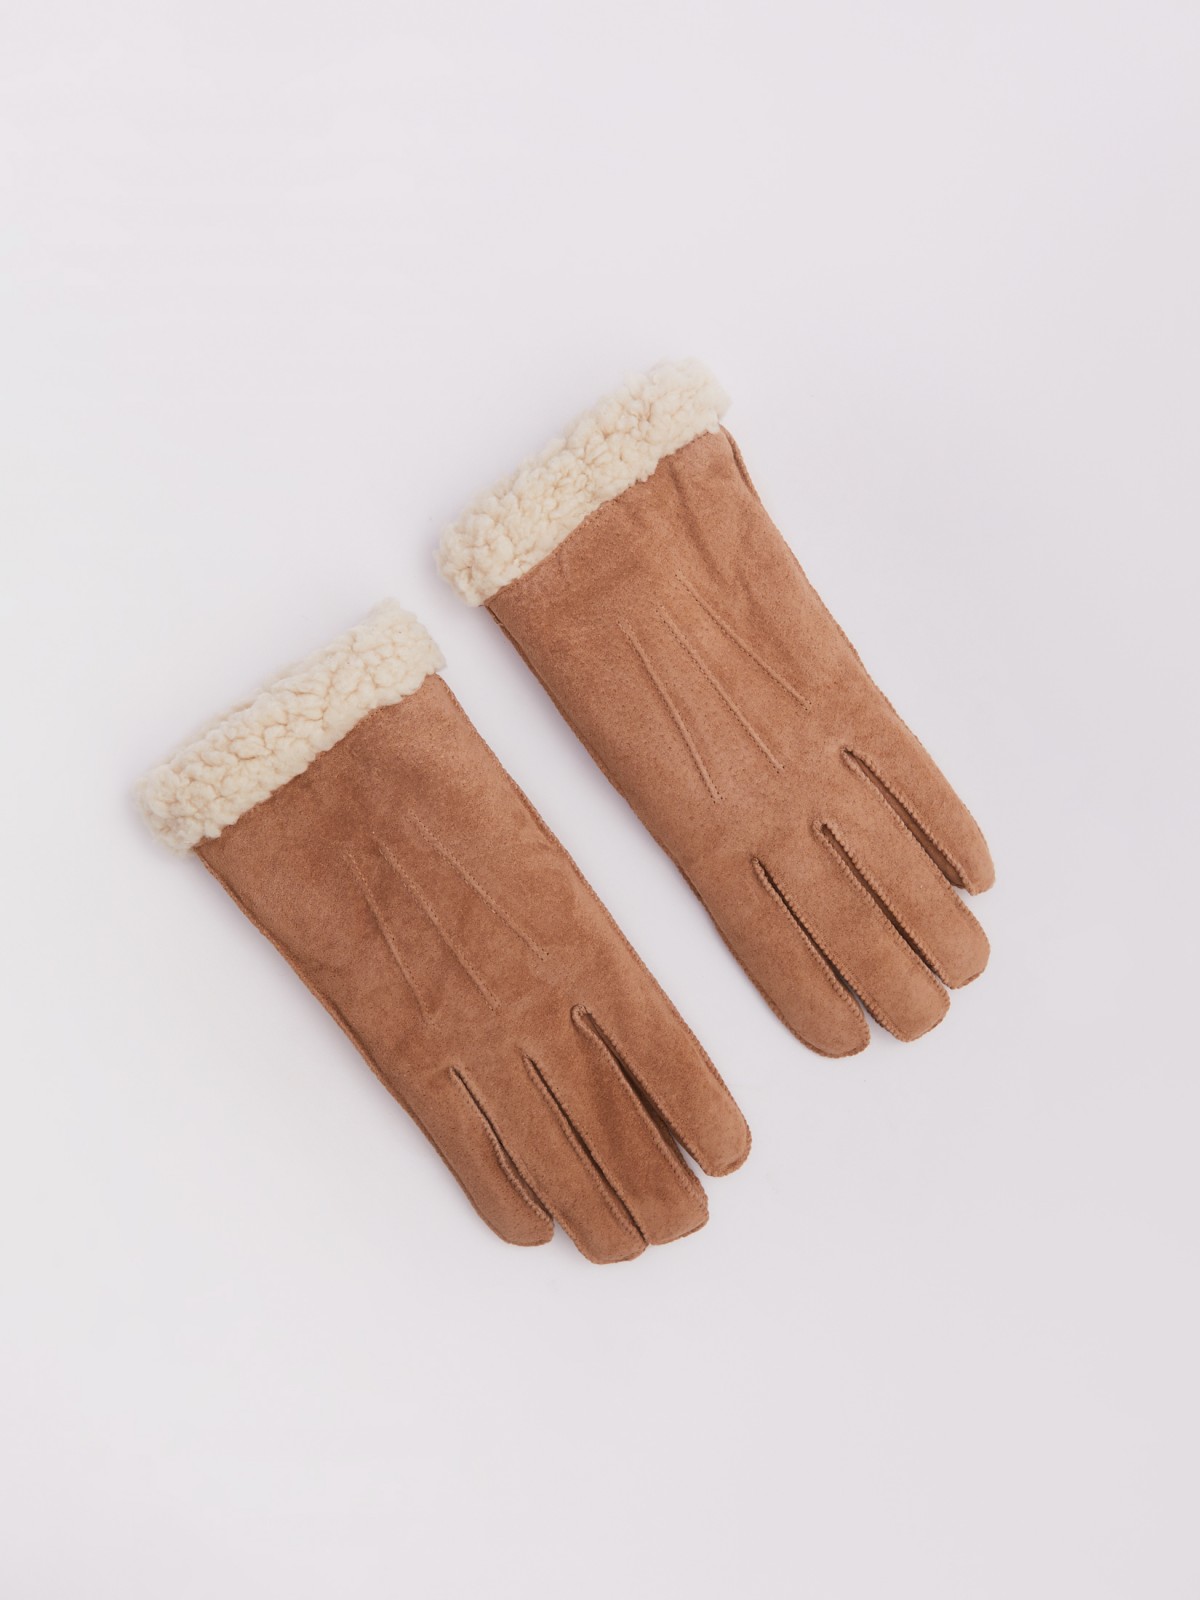 Тёплые замшевые перчатки с экомехом zolla 223429662015, цвет бежевый, размер S/M - фото 4